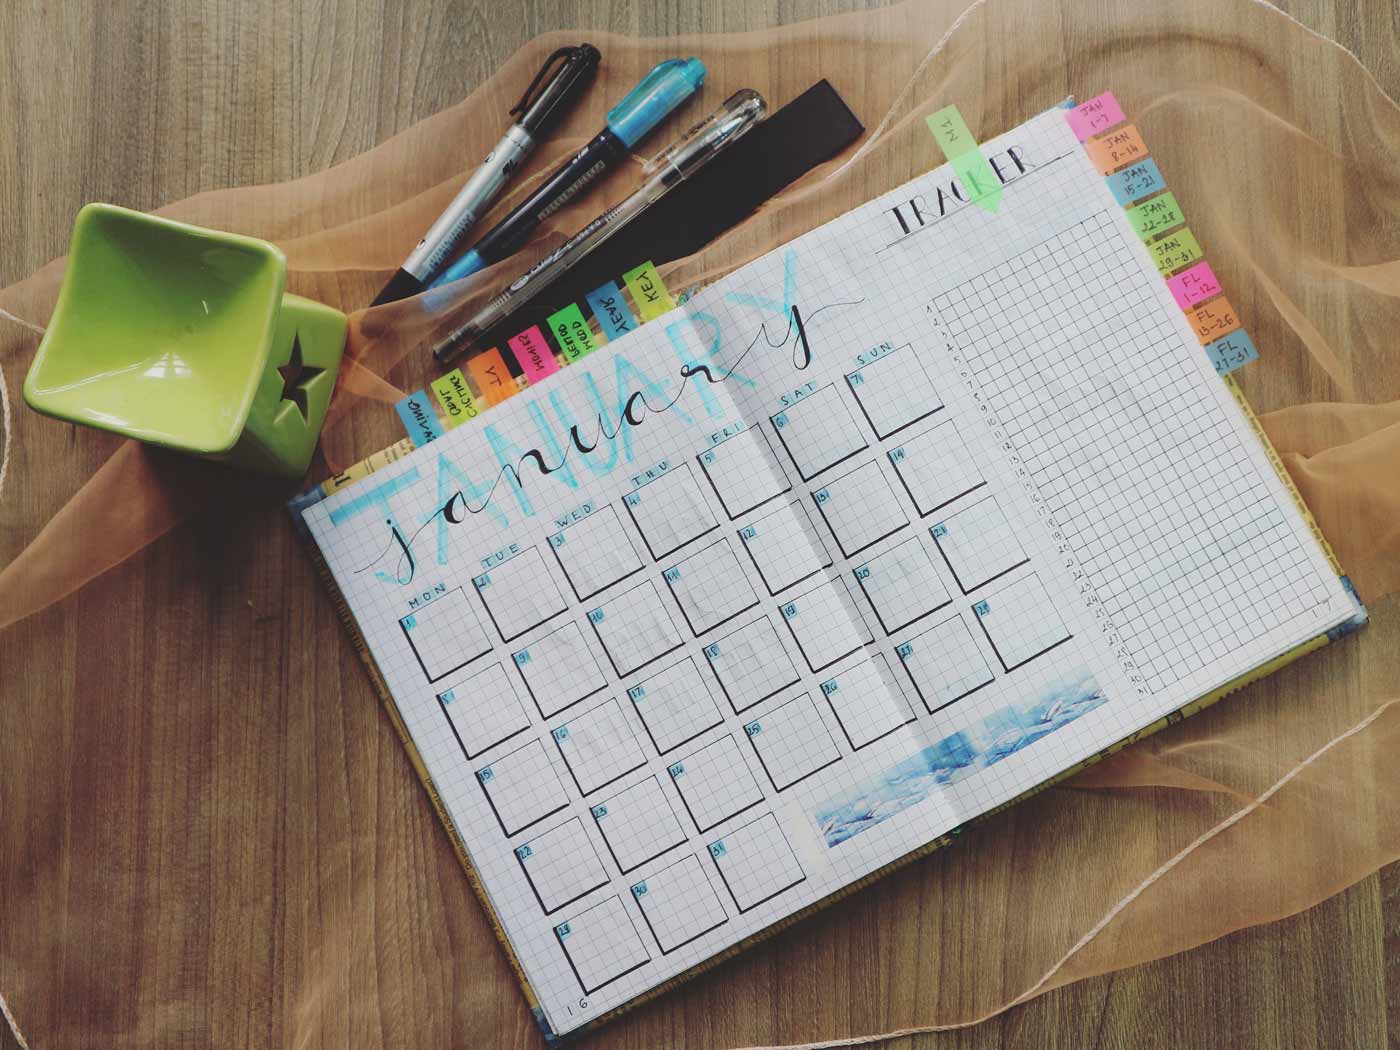 Aufgeschlagener Kalender, zusammen mit Stiften und Notizzetteln